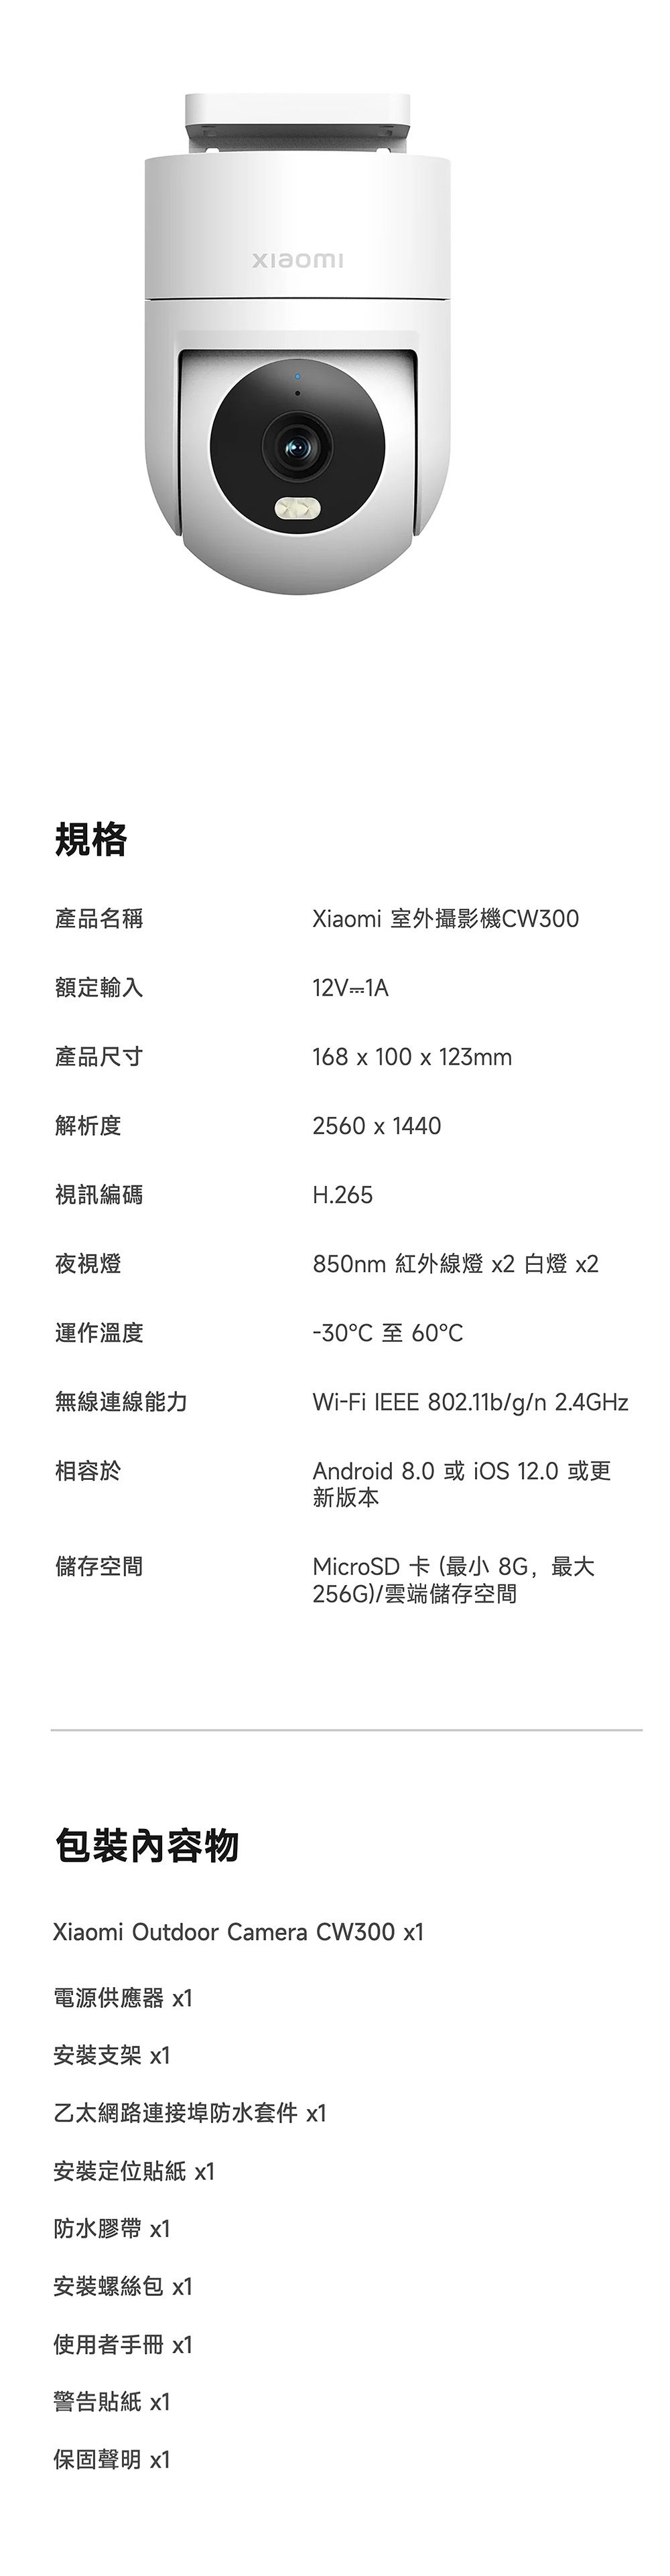 規格產品名稱Xiaomi 室外攝影機W300額定輸入12V1A產品尺寸168  100 x 123mm解析度2560 x 1440視訊編碼夜視燈運作溫度H.265850nm 紅外線燈 x2 白燈 x2-30 60C無線連線能力Wi-Fi IEEE 802.11b/g/n 2.4GHz相容於儲存空間包裝內容物Android 8.0或iOS 12.0或更新版本MicroSD 卡(最小 8G,最大256G)/雲端儲存空間Xiaomi Outdoor Camera CW300 電源供應器 x1安裝支架 x1乙太網路連接埠防水套件 x1安裝定位貼紙 x1防水膠帶 x1安裝螺絲包 x1使用者手冊 x1警告貼紙 x1保固聲明 x1